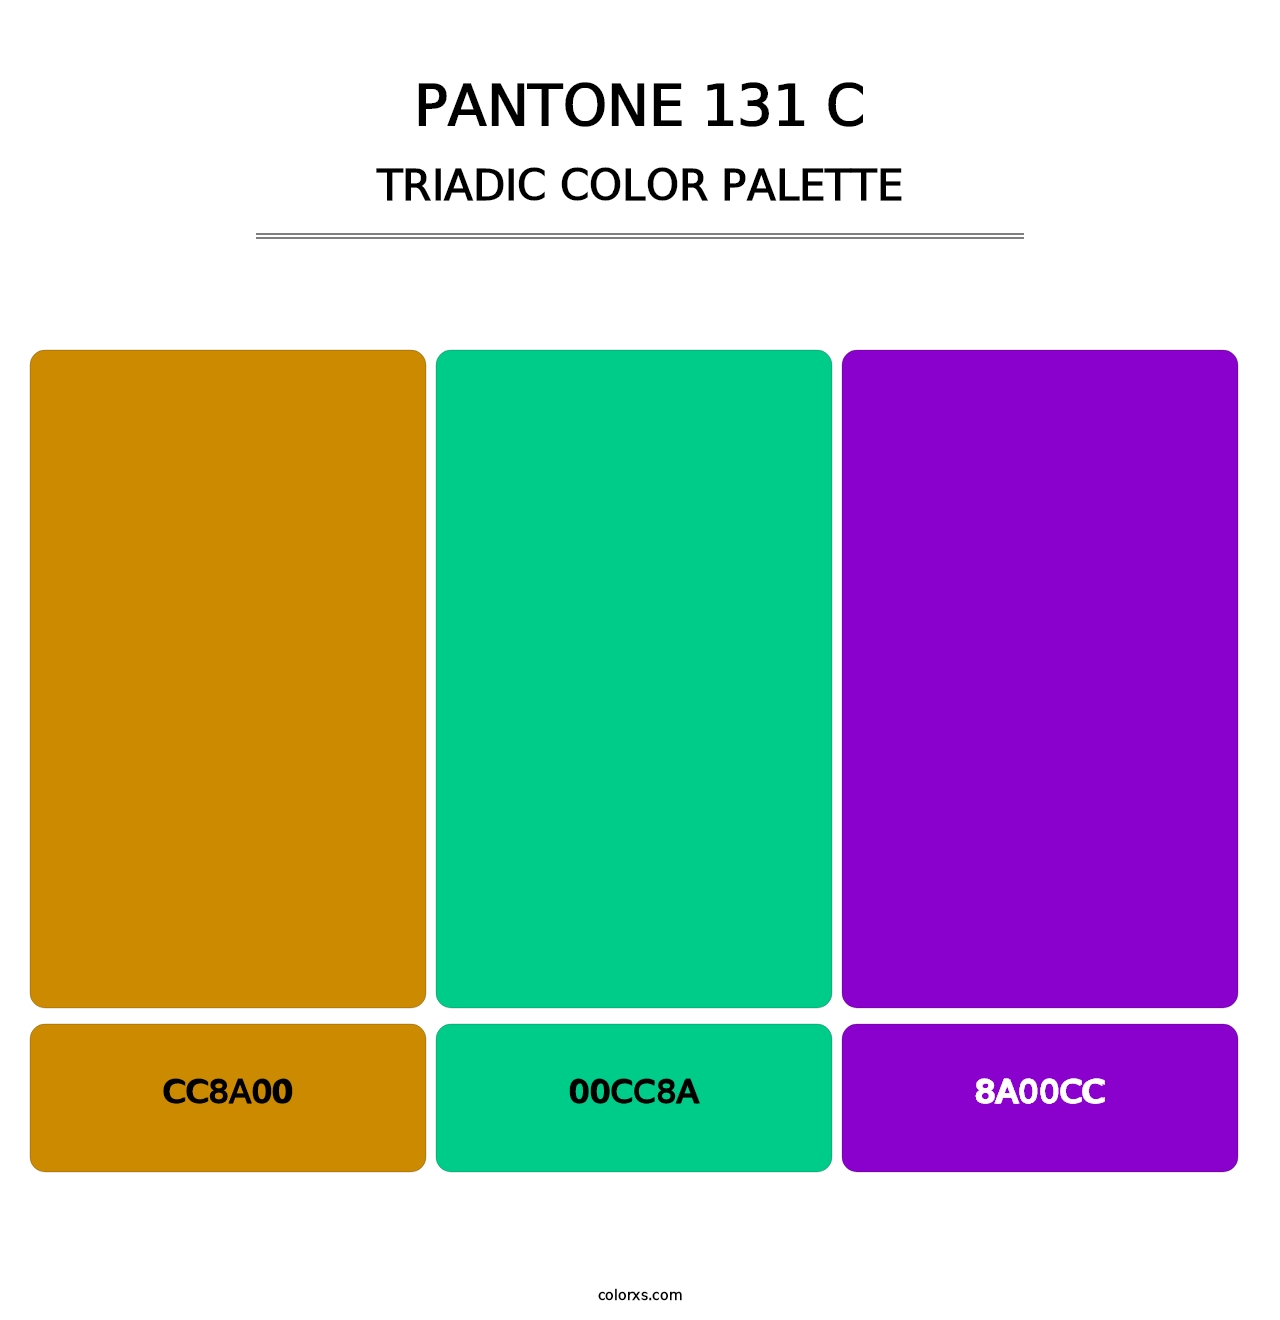 PANTONE 131 C - Triadic Color Palette